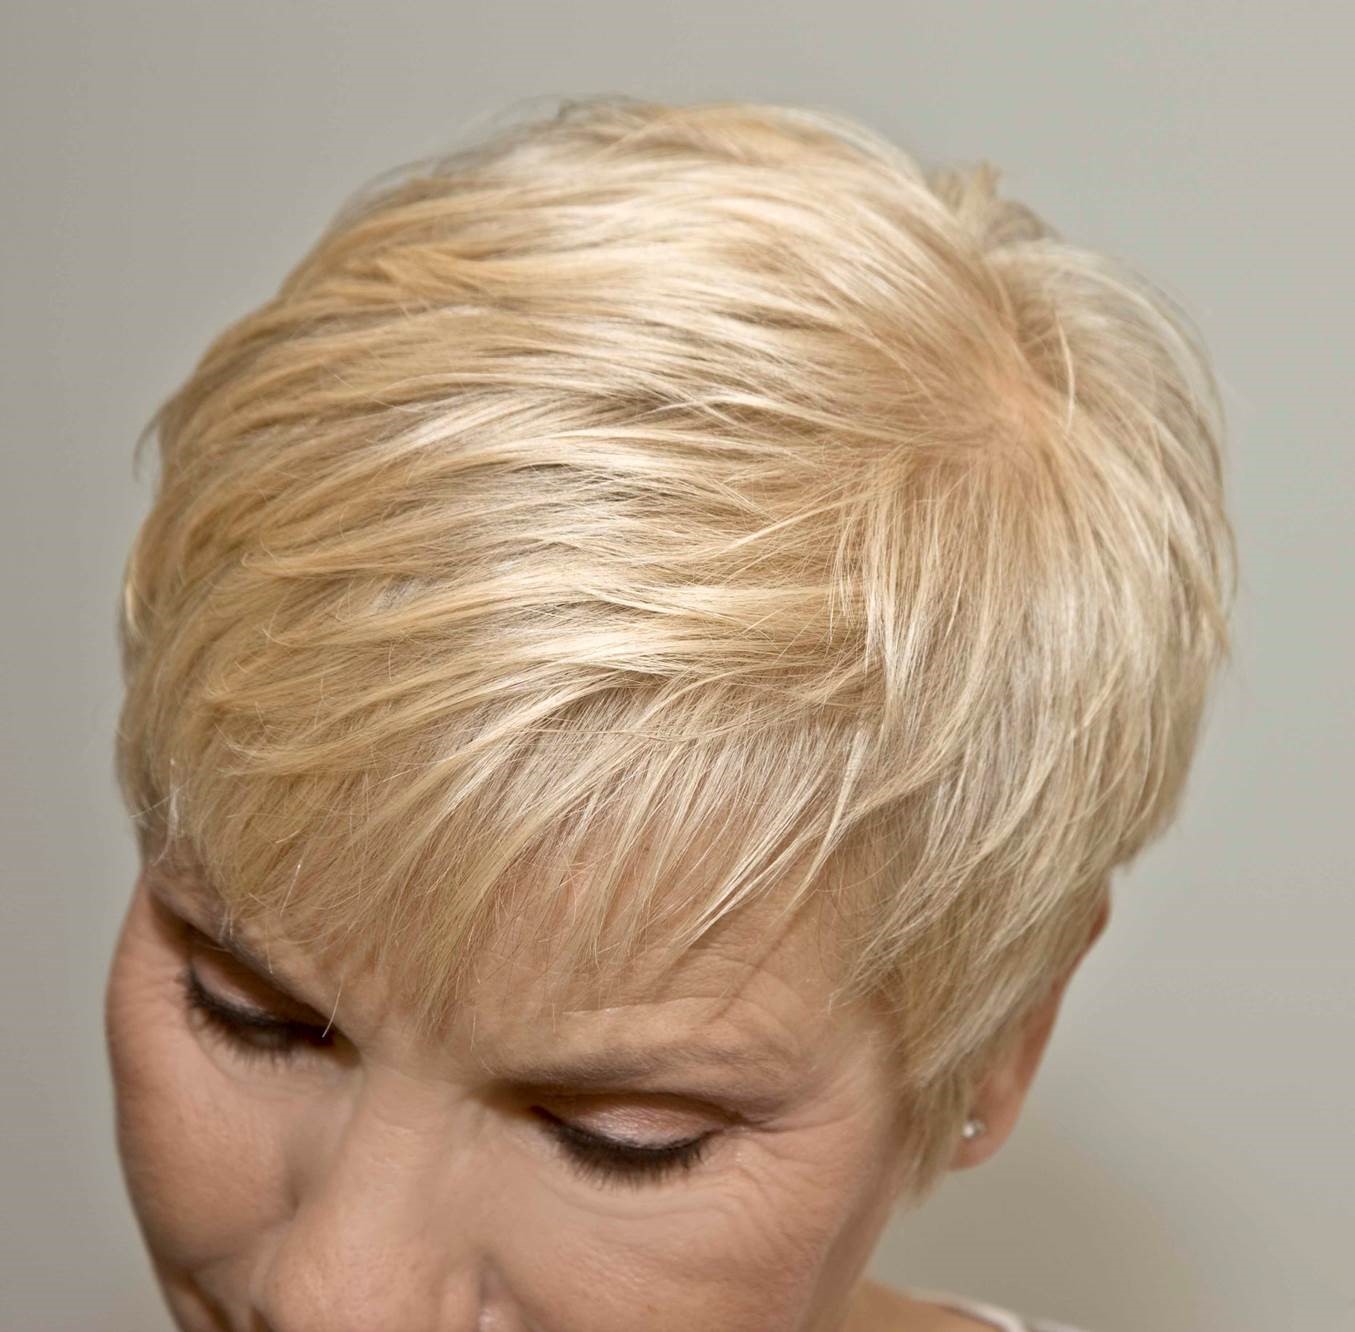 Nach der Behandlung mit Naturhaarfarbe hat die Frau natürlich leuchtendes blondes Haar.